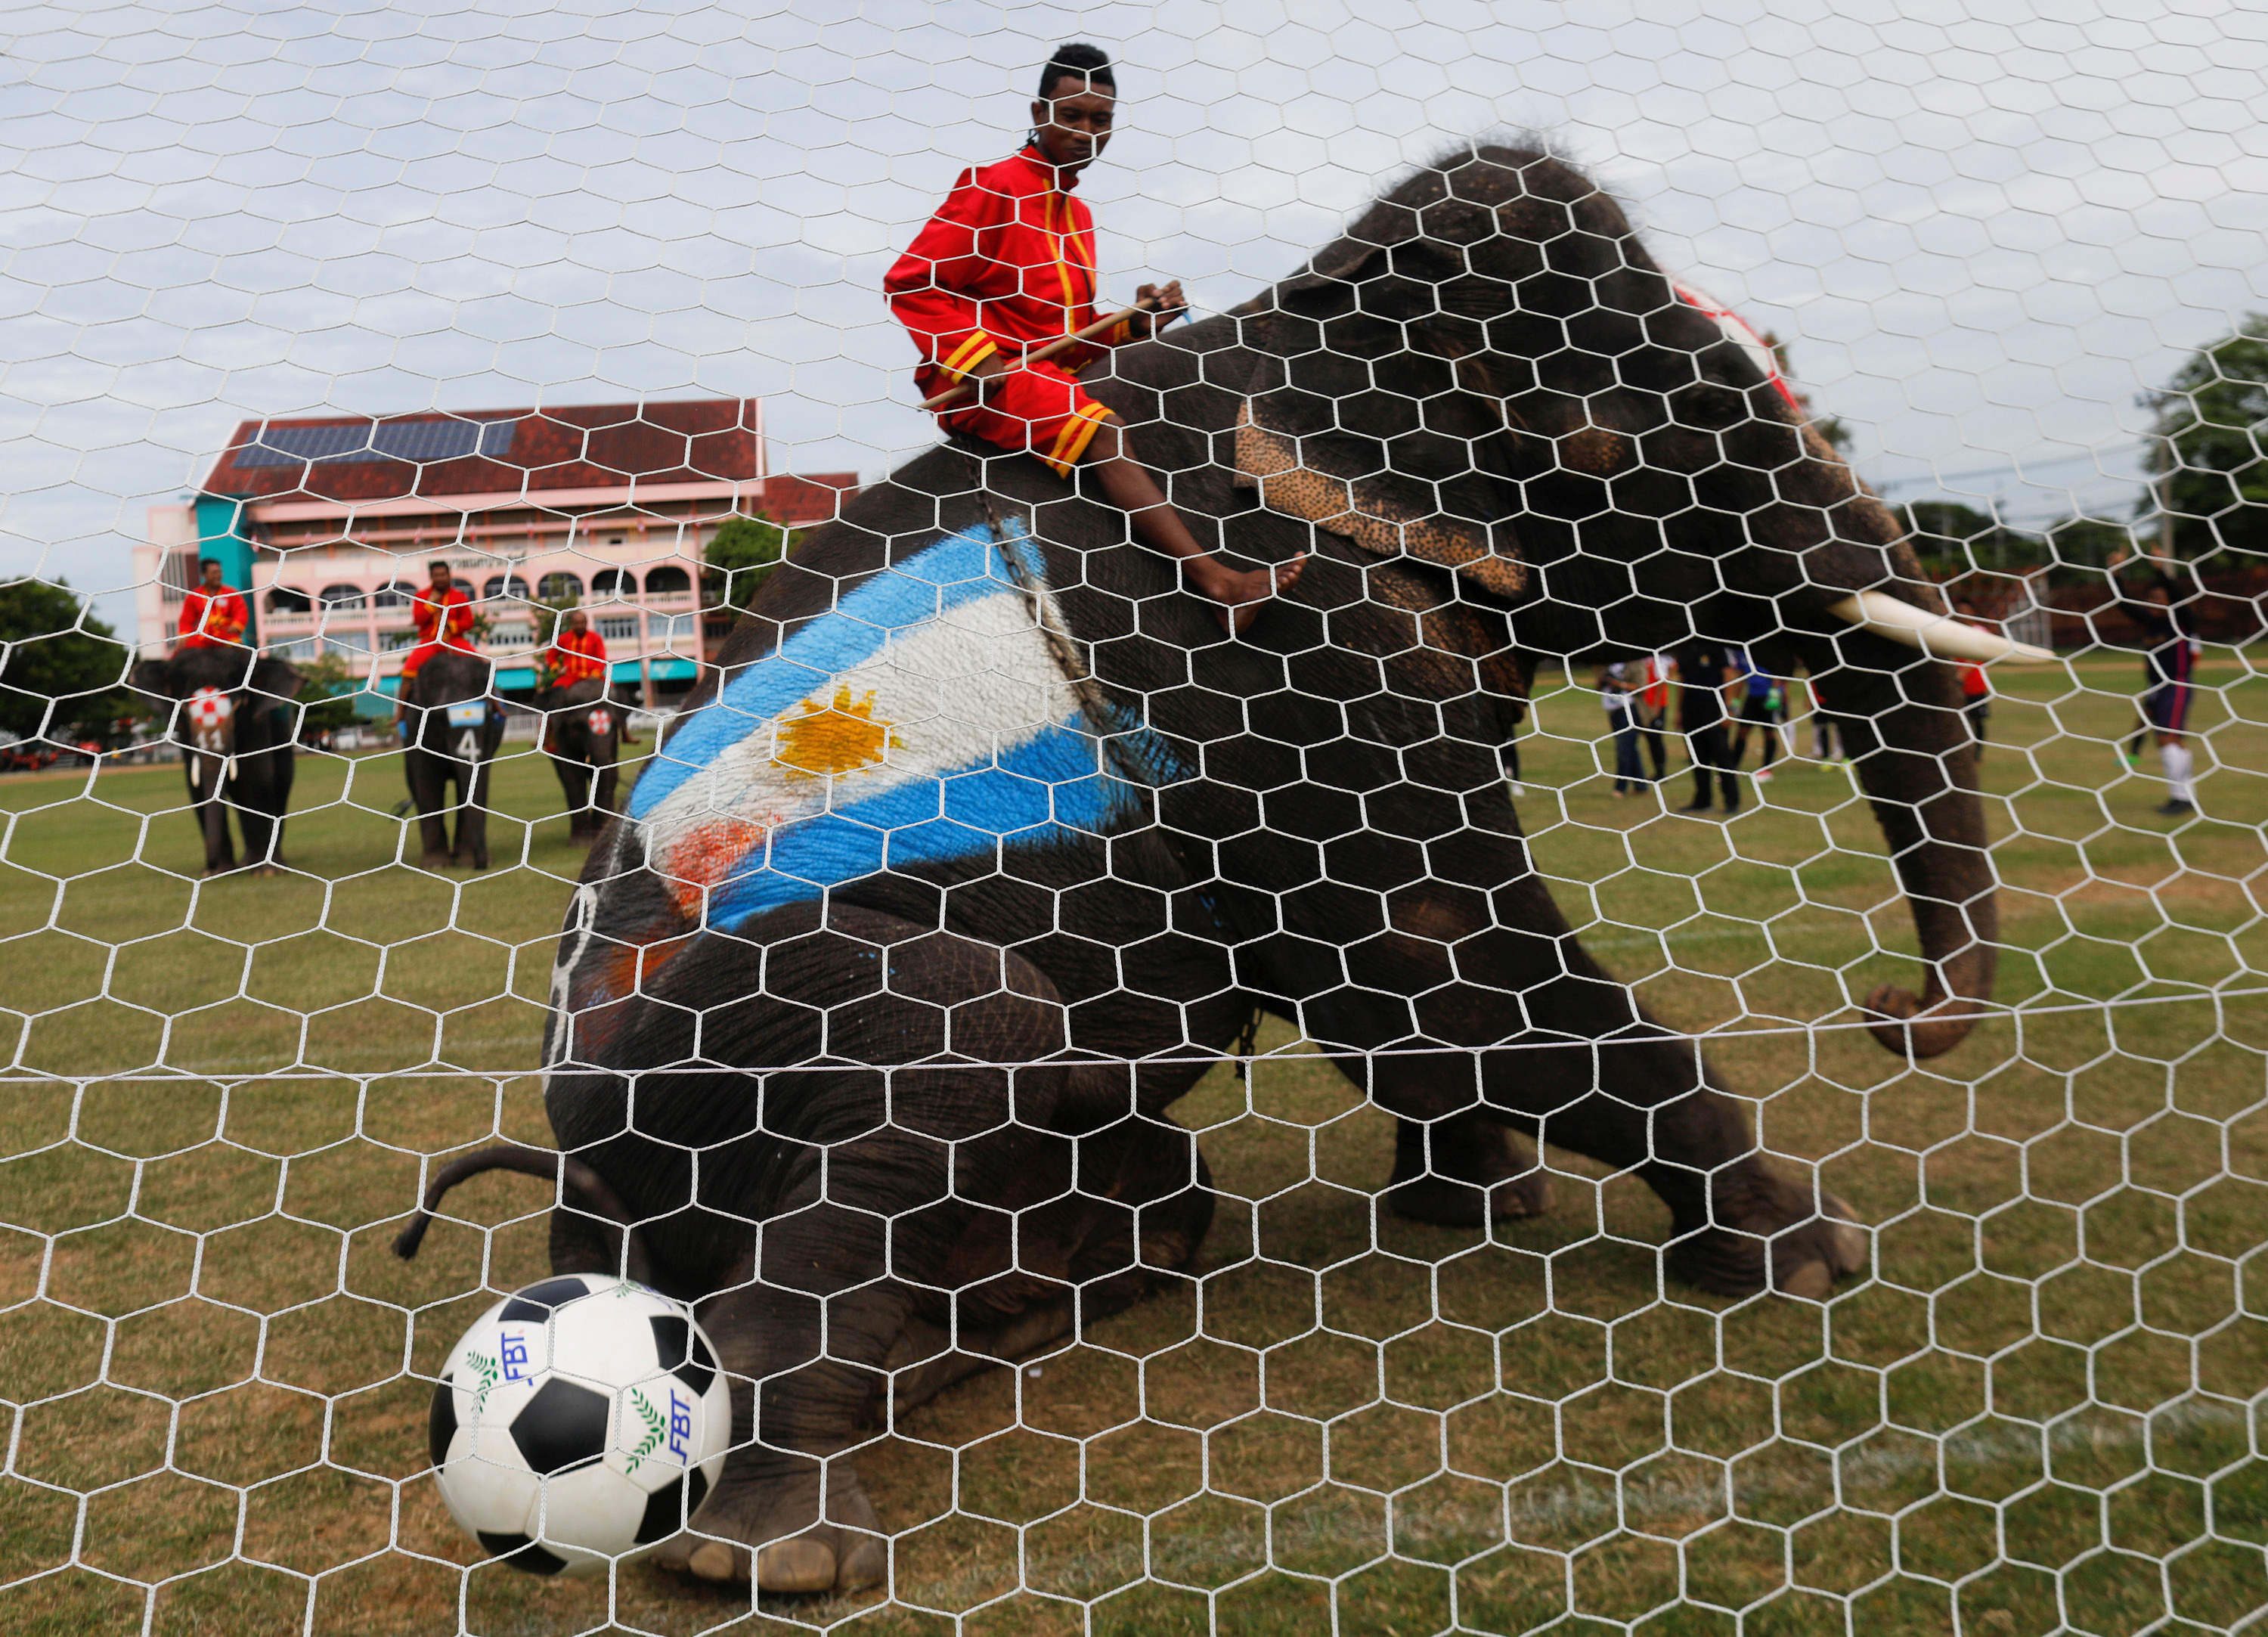 فيل يحرز هدفًا خلال مباراة كرة قدم فى تايلاند